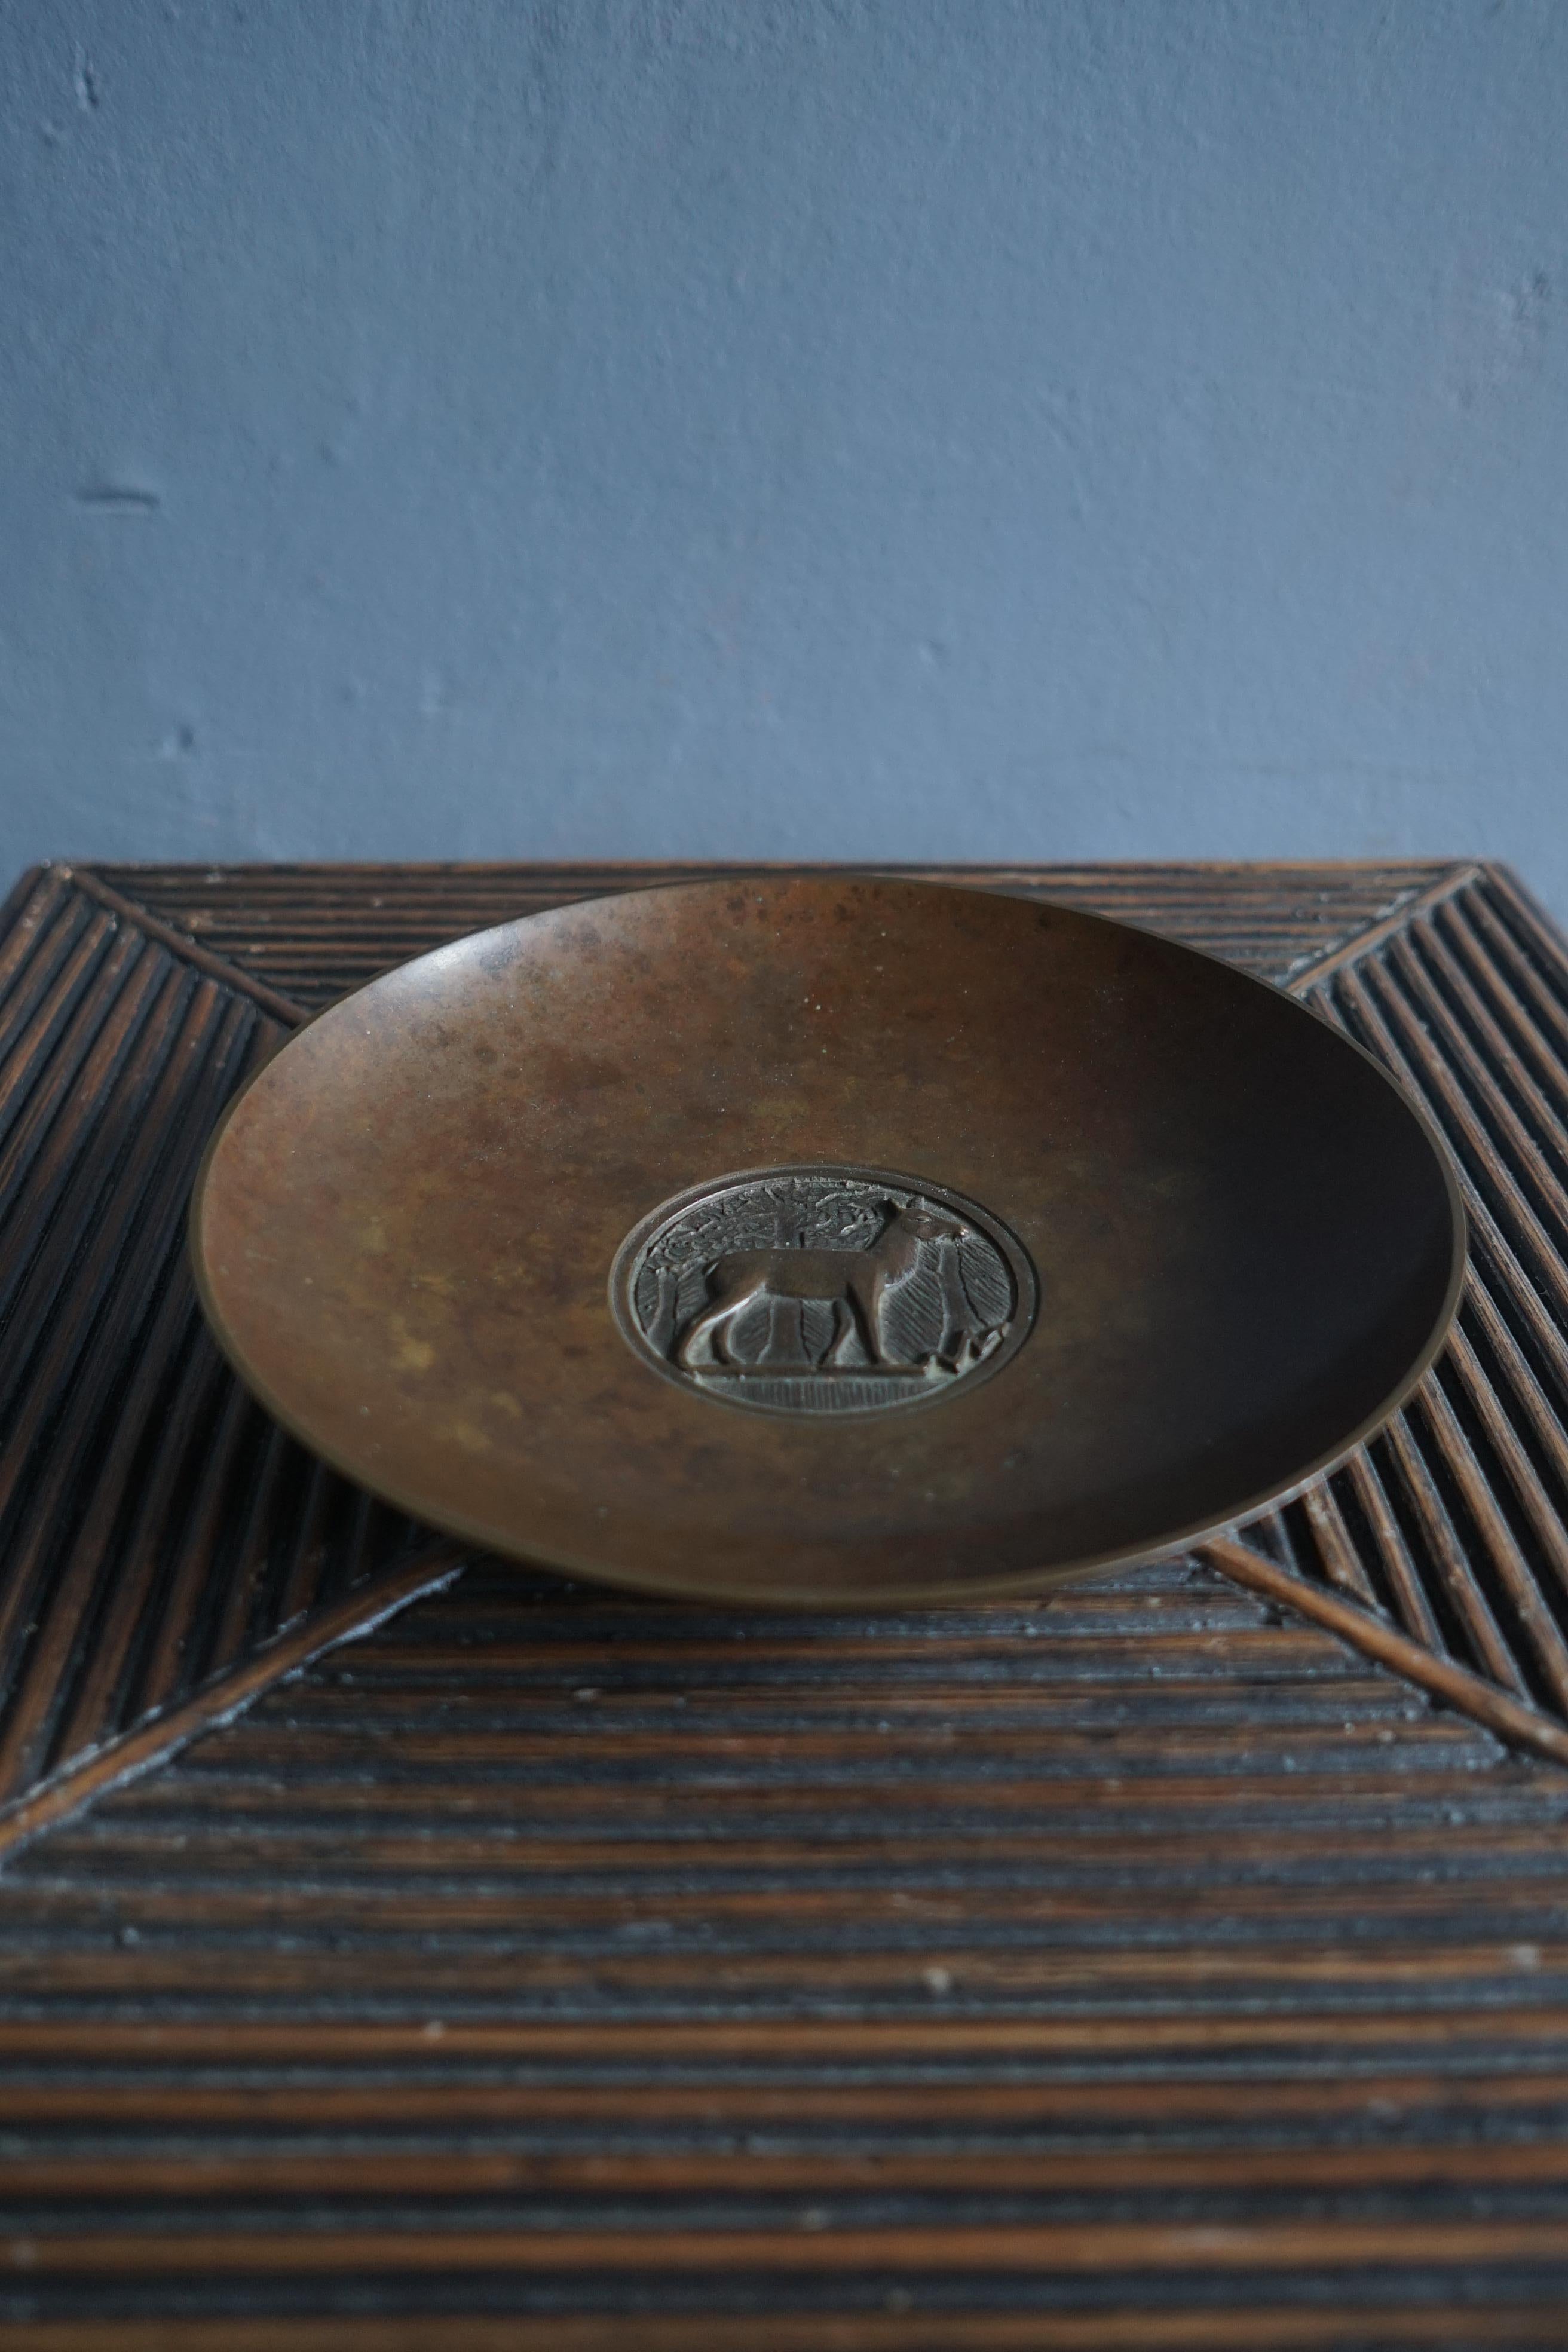 Bronze Art deco Schüssel / Ladegerät von dänischen Künstler Evan Jensen aus den 1930er Jahren in einem schönen ursprünglichen Zustand, die Schale ist signiert Evan Jensen Copenhagen Bronze und hat Modellnummer 320.

Die Schale hat eine sehr